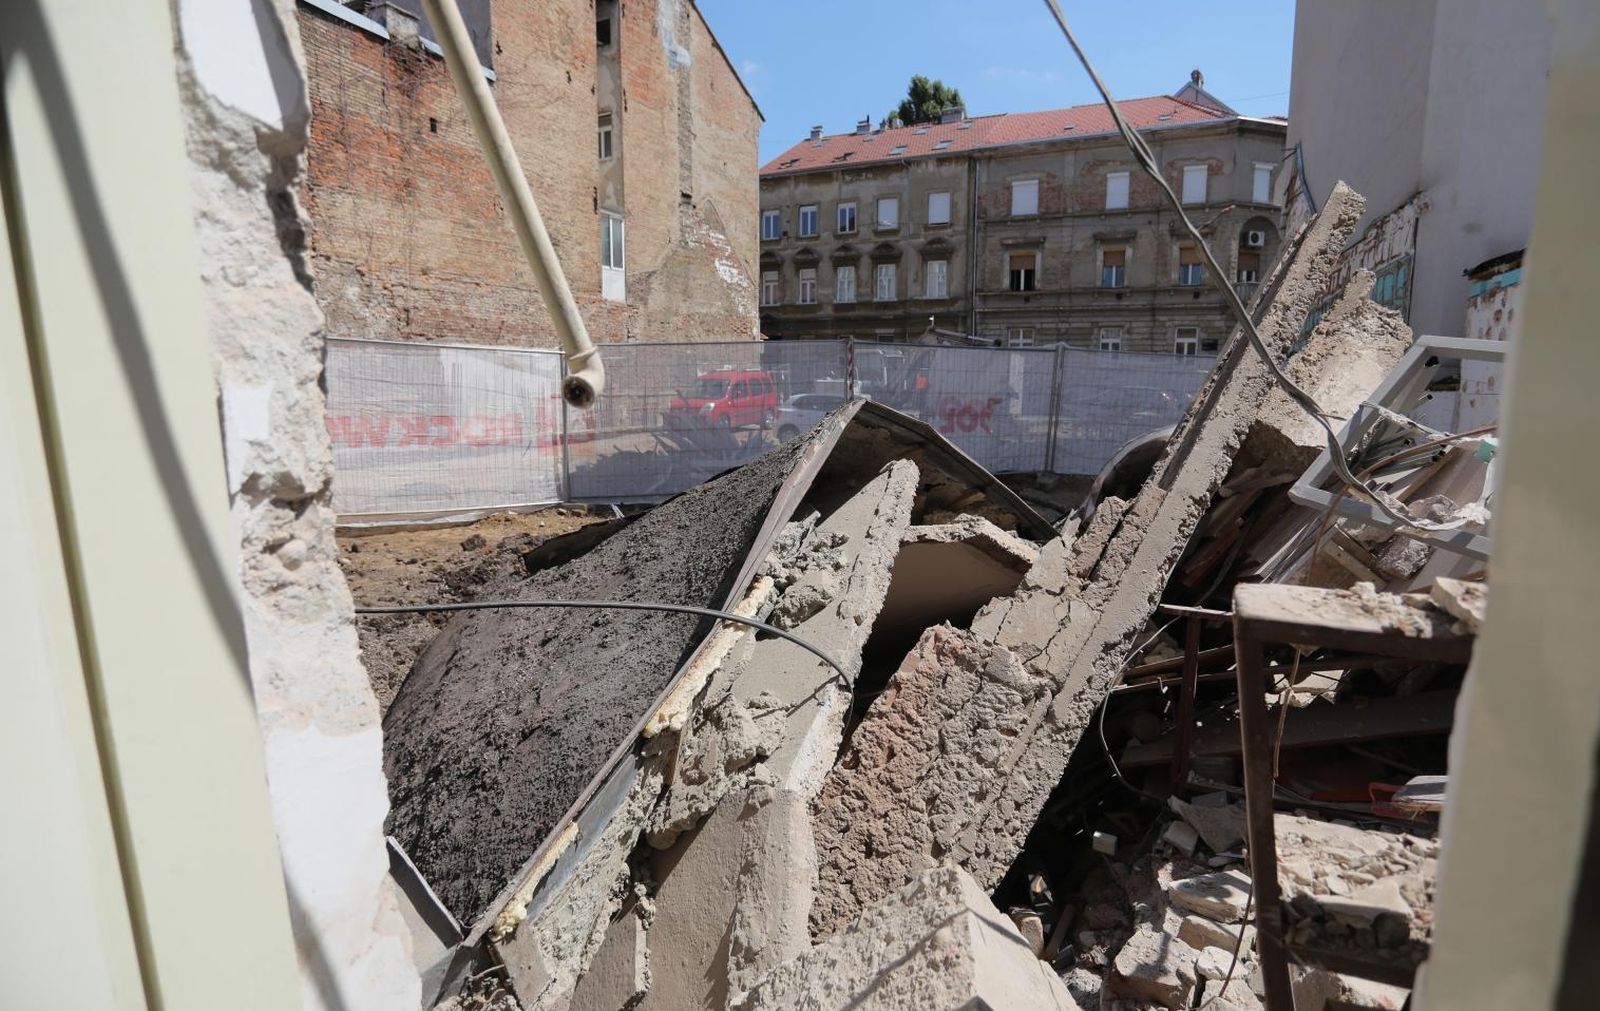 03.08.2021., Zagreb - U Medulicevoj ulici urusio se dio zgrade. 

Photo: Tomislav Miletic/PIXSELL